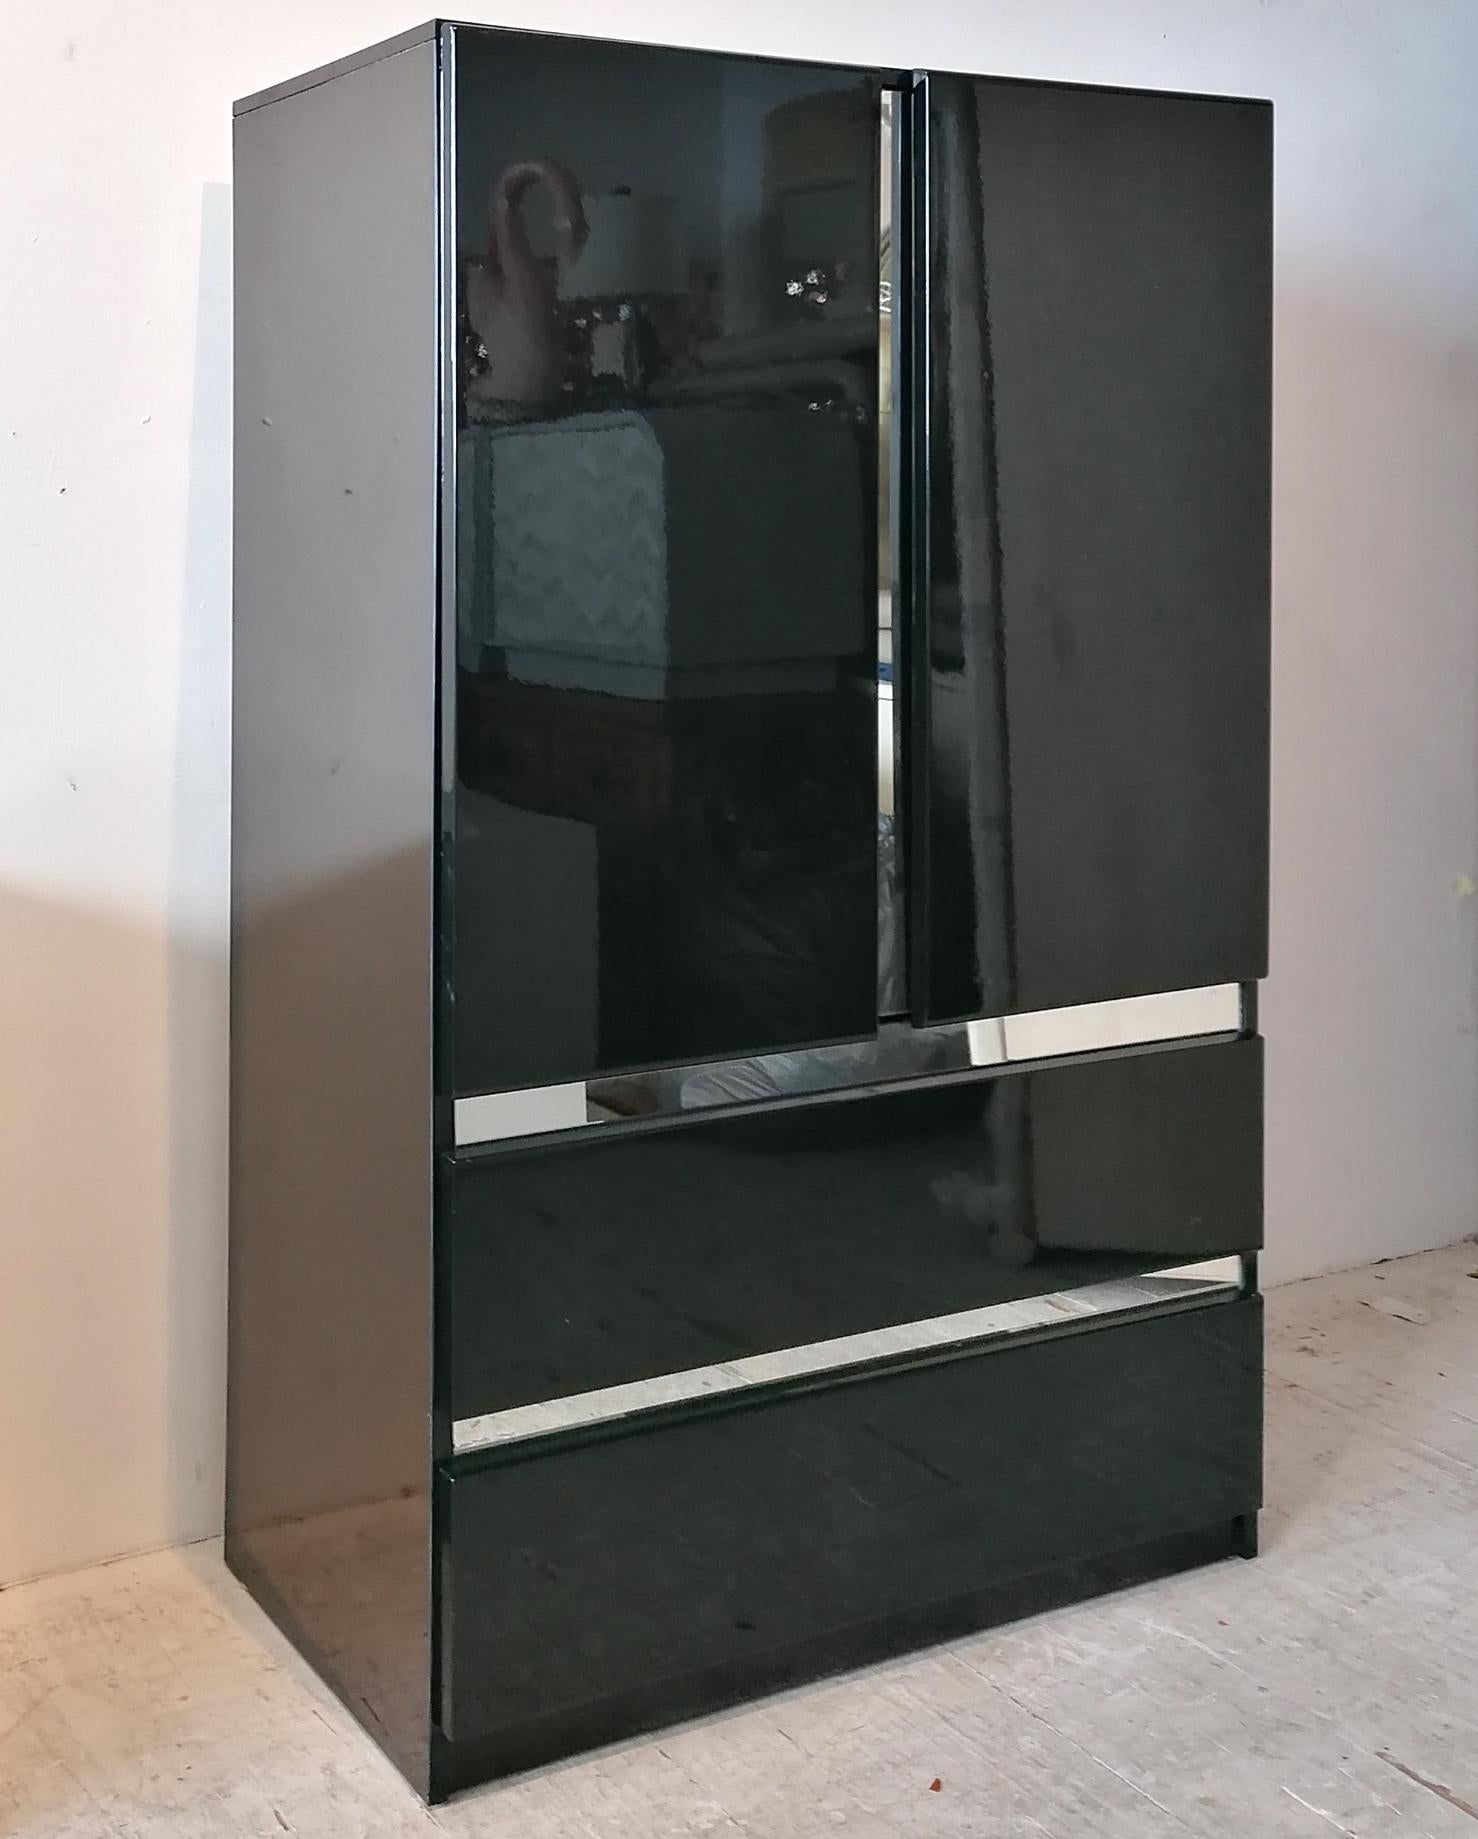 Schwarz lackierter Hochschrank von Millennium, USA, aus den 1980er Jahren. Sieht aus wie eine Chromeinfassung, ist aber in Wirklichkeit Spiegelglas. Flügeltüren öffnen sich zu Regalfächern; darunter 2 große Schubladen. In tollem